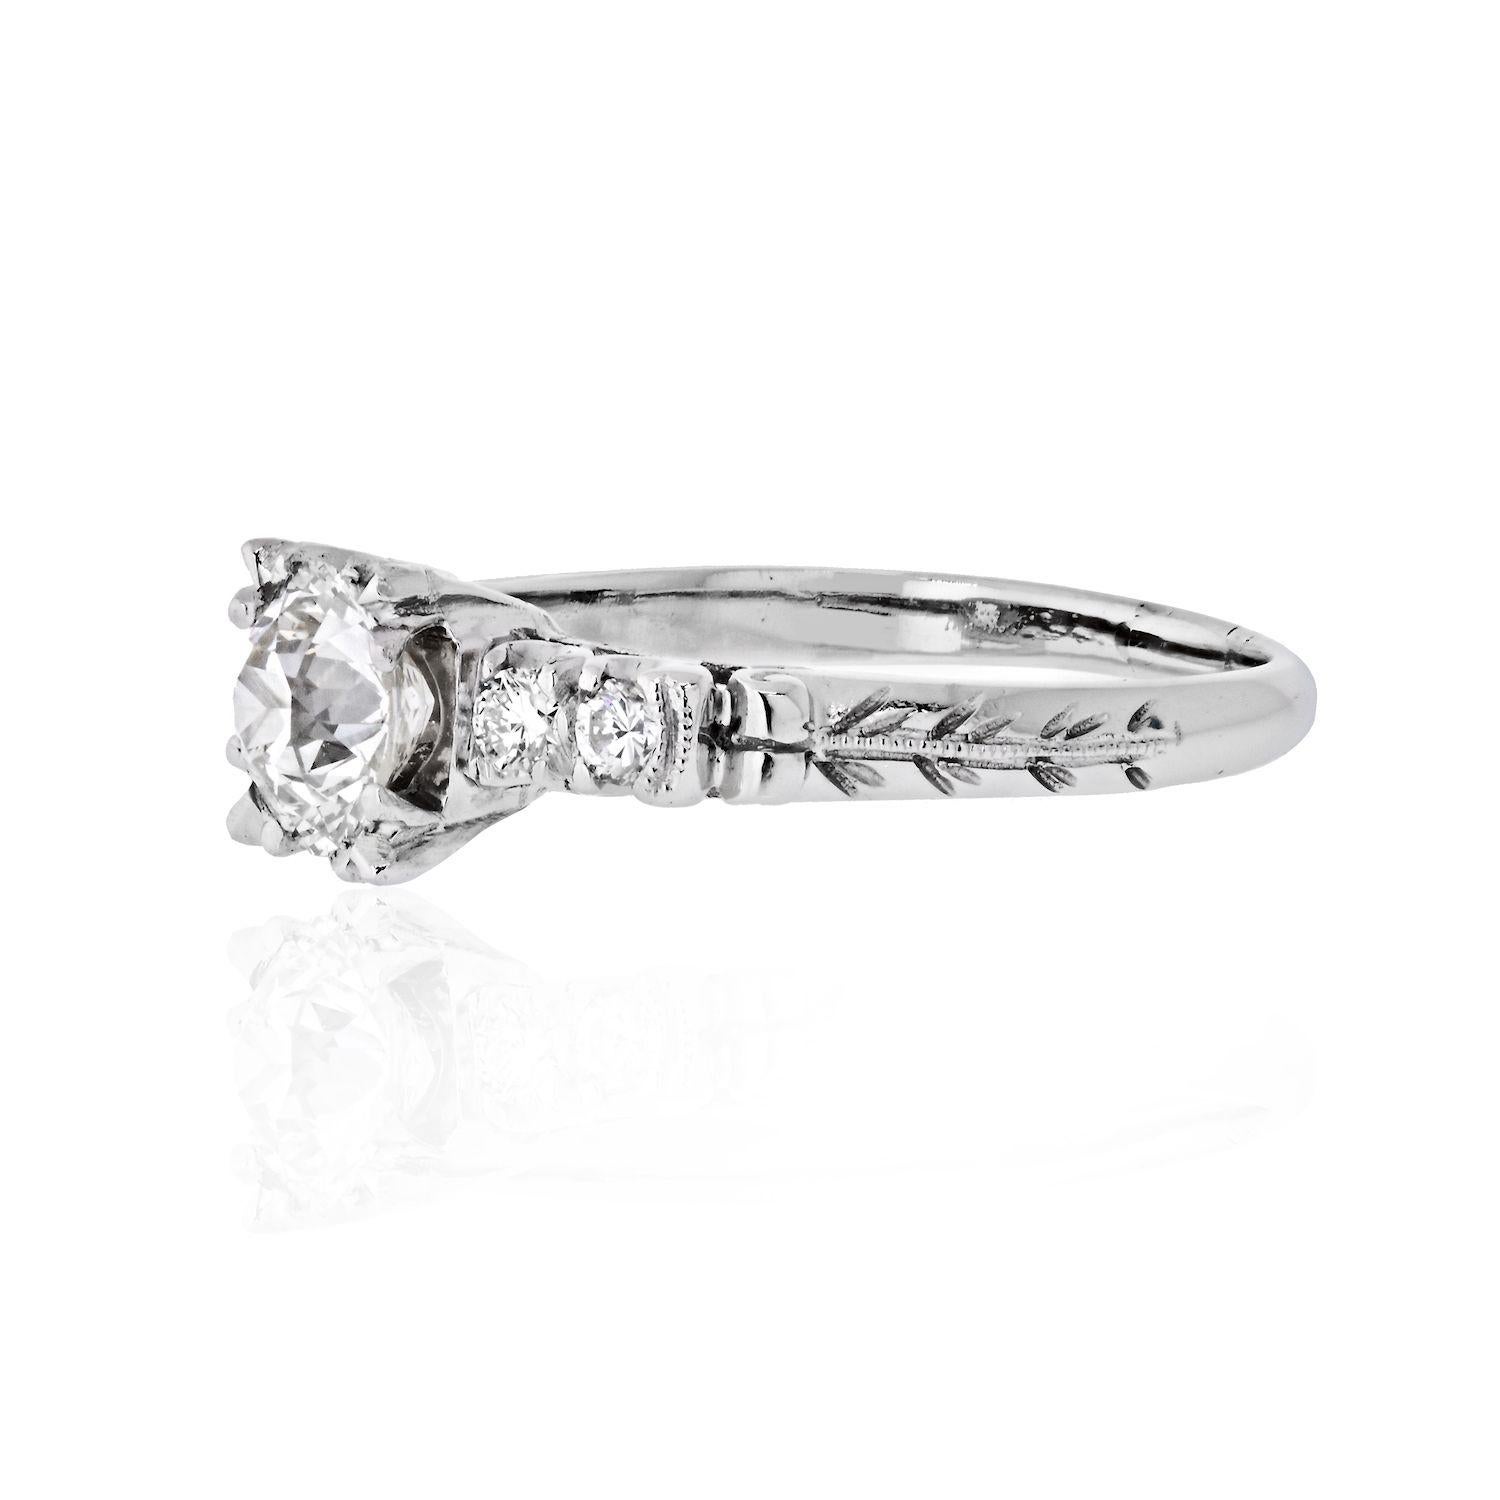 Dies ist eine schöne 1,03 Karat Old European Cut diamodn Verlobungsring. Center Diamant ist GIA zertifiziert J Farbe, VS2 Klarheit. Der Schaft des Rings ist mit runden Diamanten von ca. 0,10 ct. und einer Vintage-Handgravur verziert.
